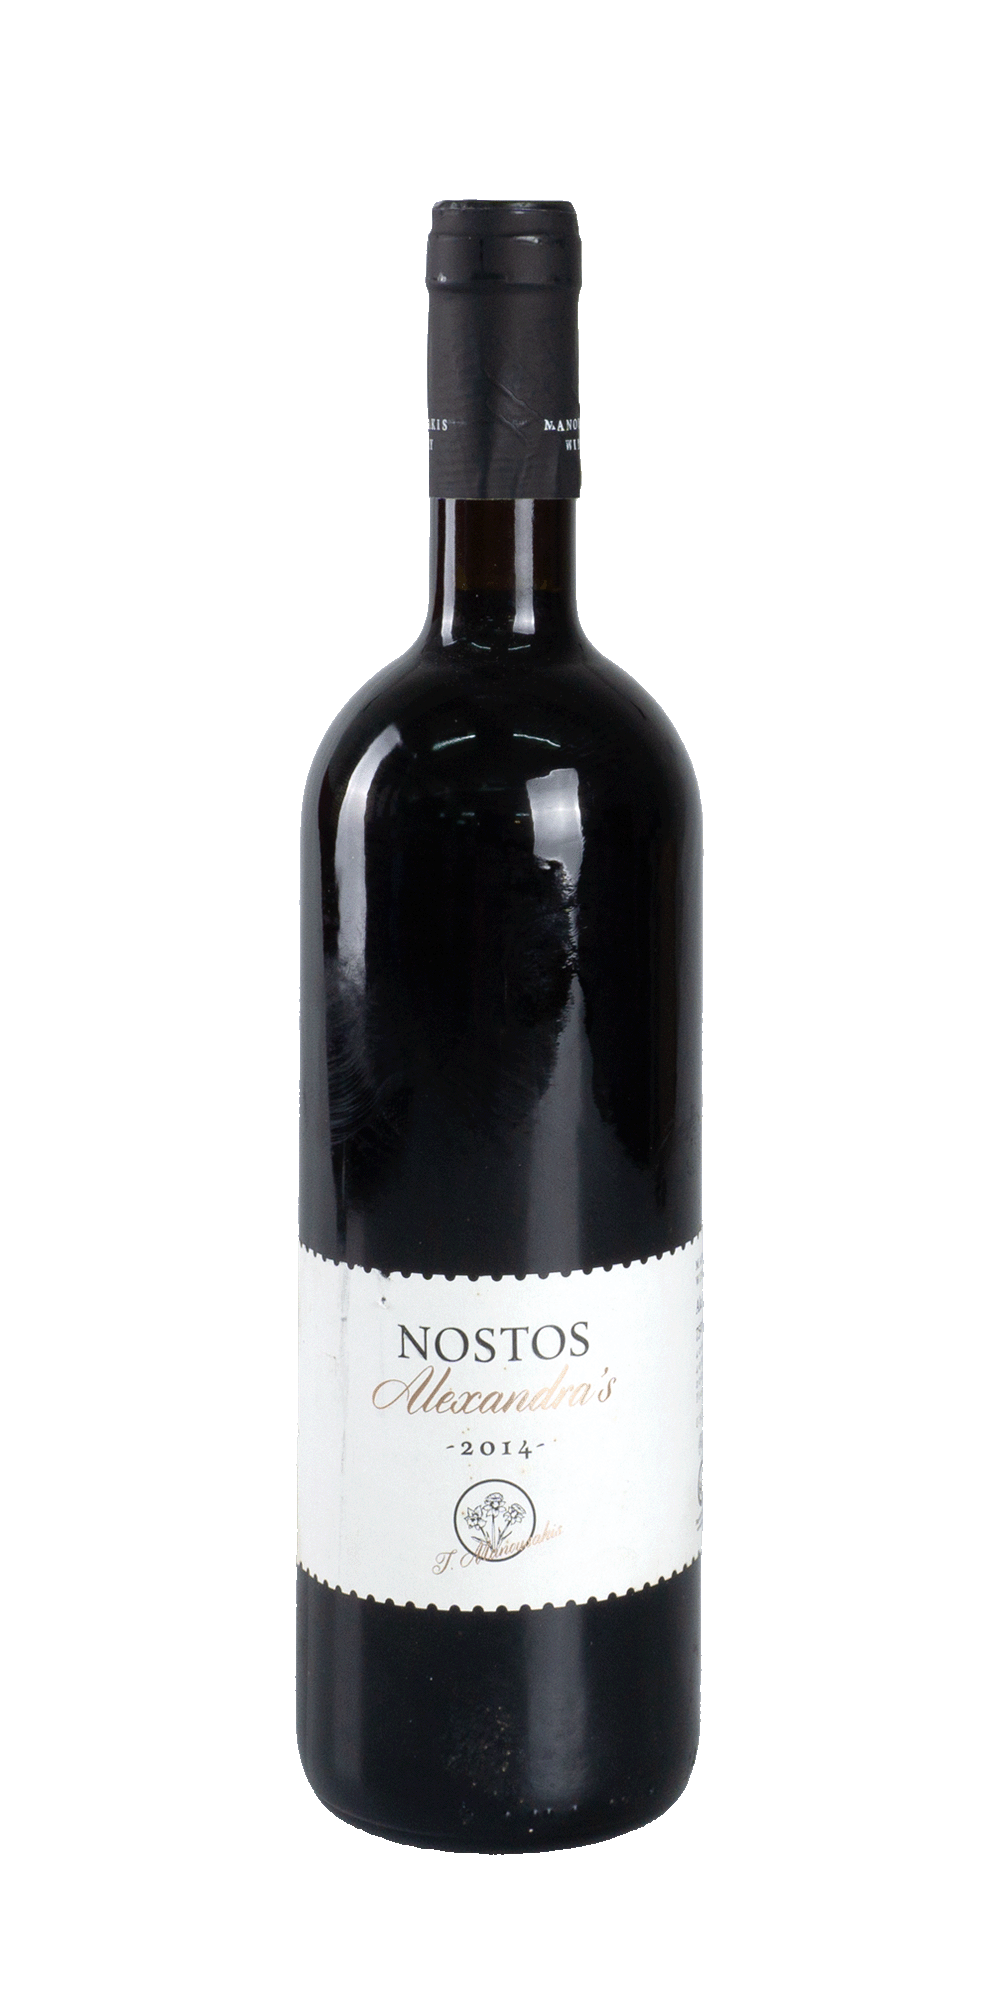 Nostos Alexandras BIO 2014 - Manousakis Winery 